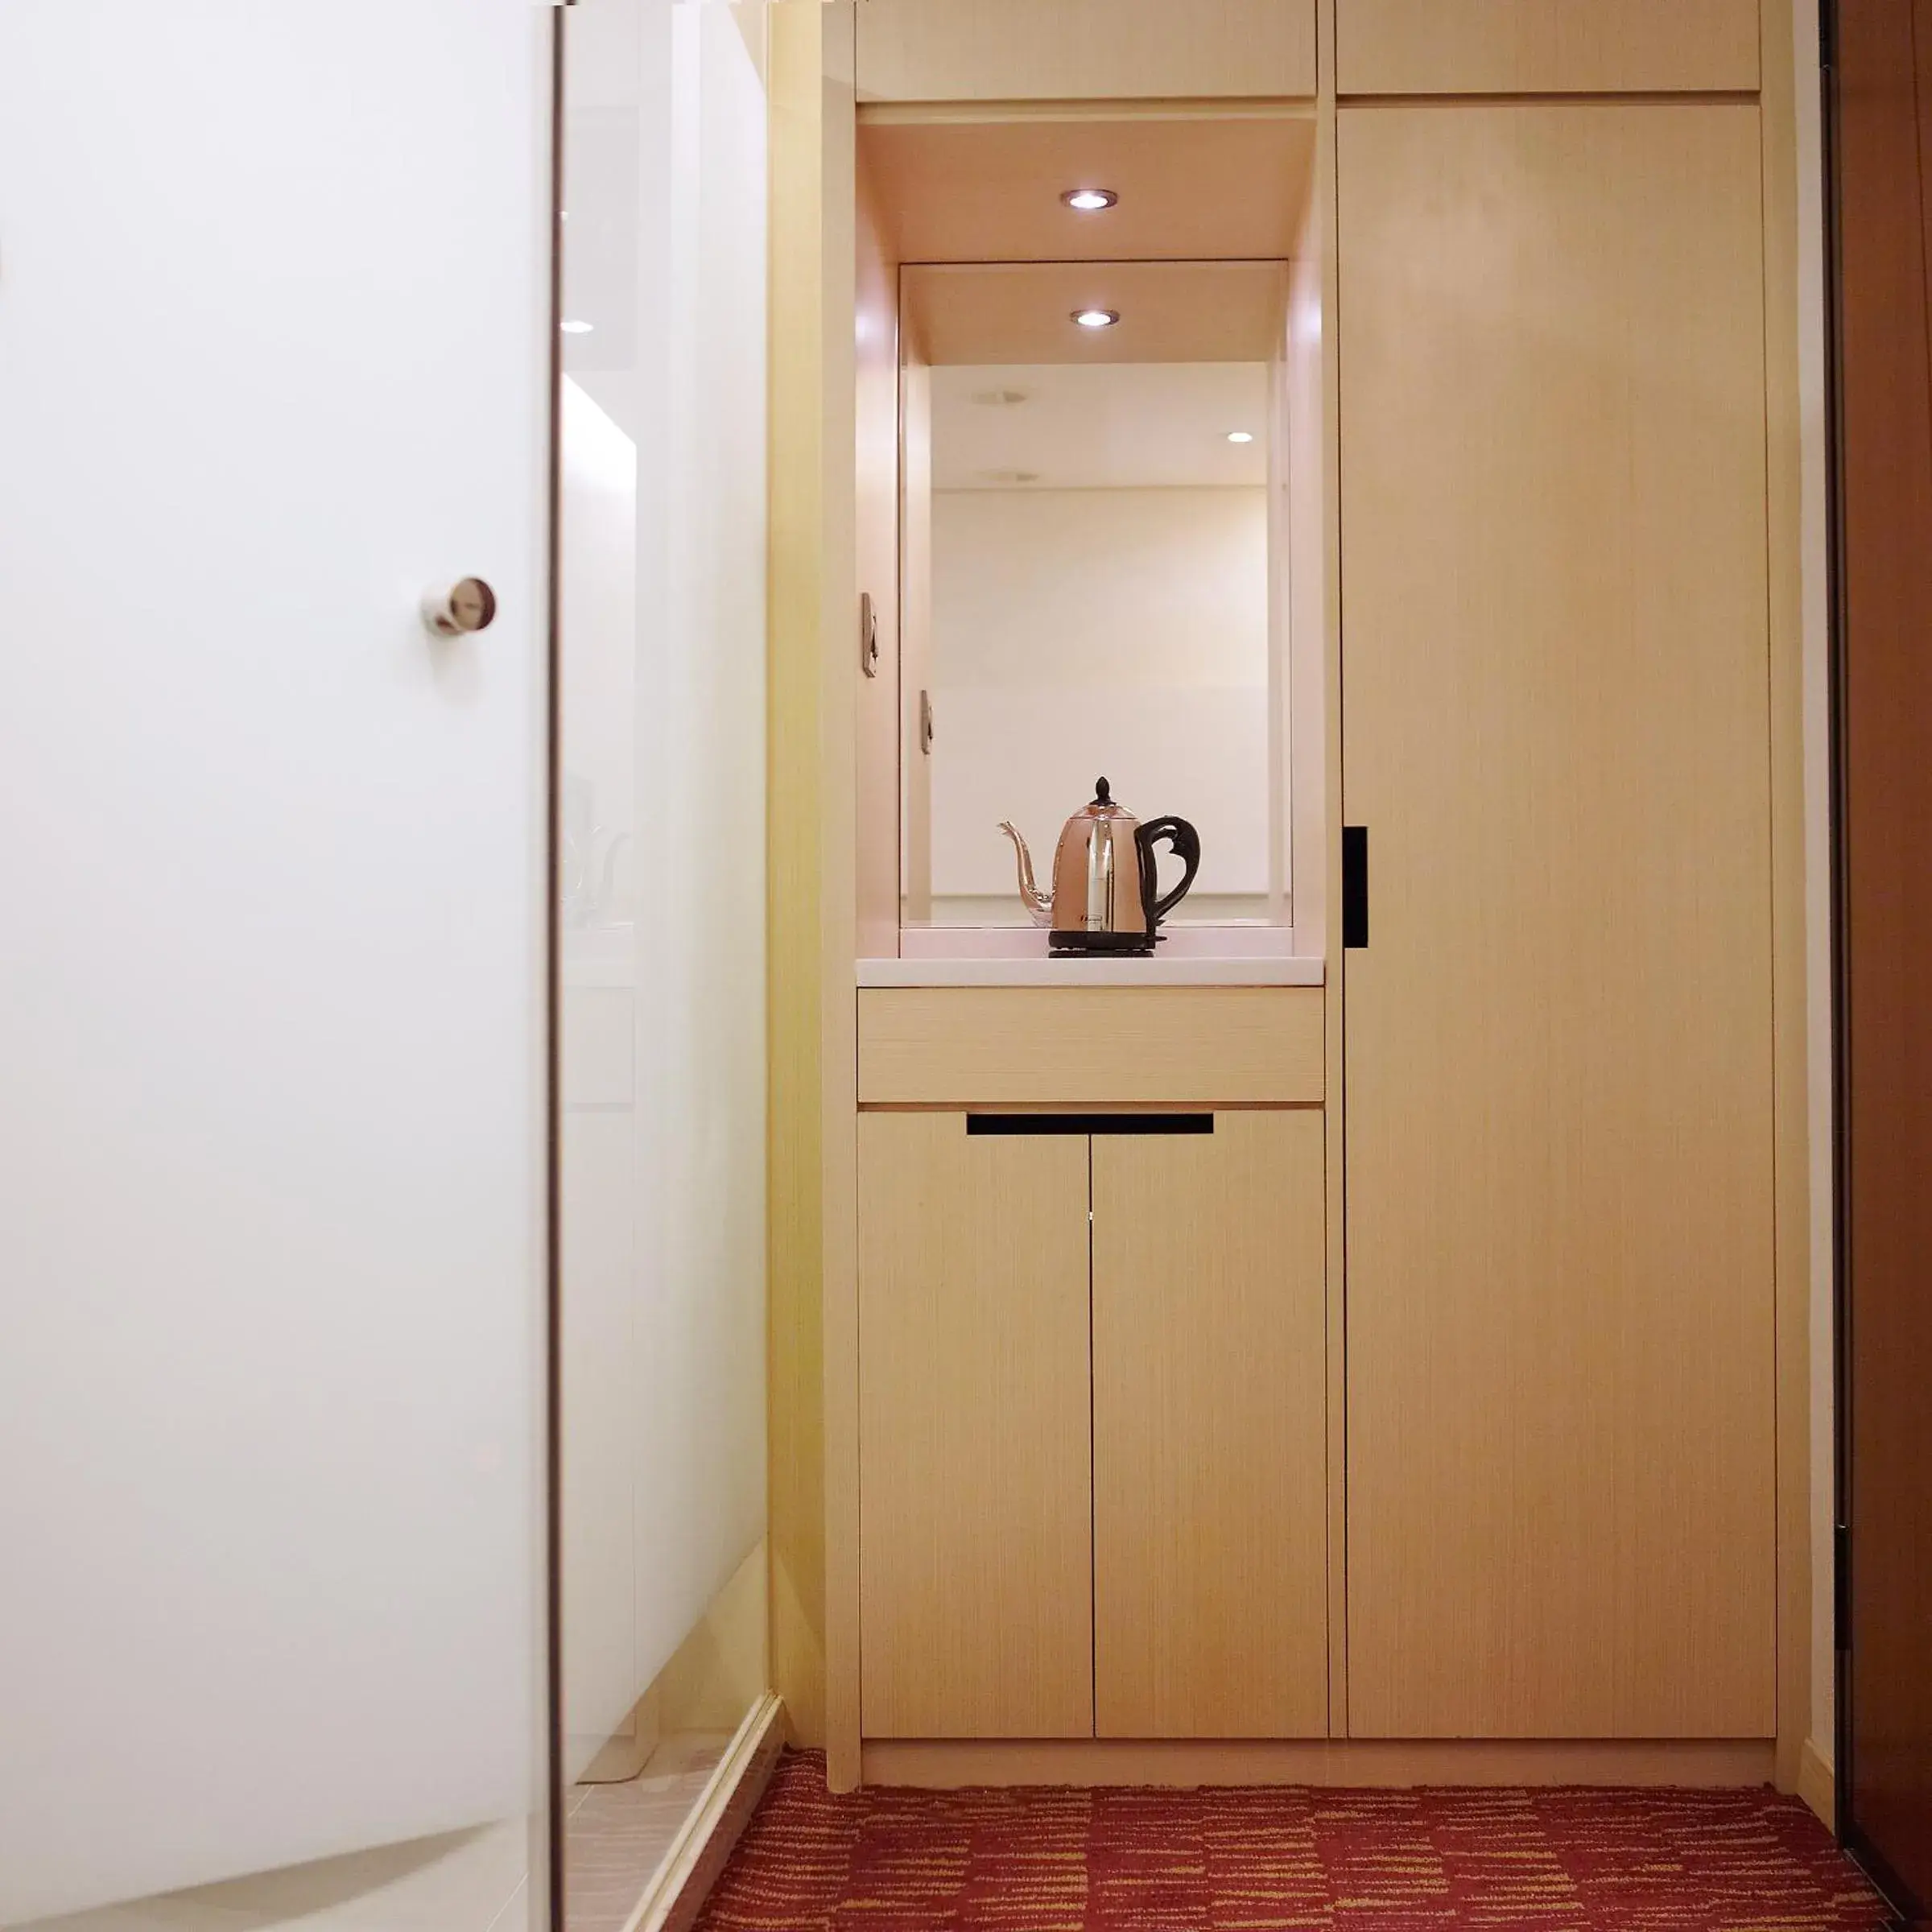 Bedroom, Bathroom in Beauty Hotels - Beautique Hotel